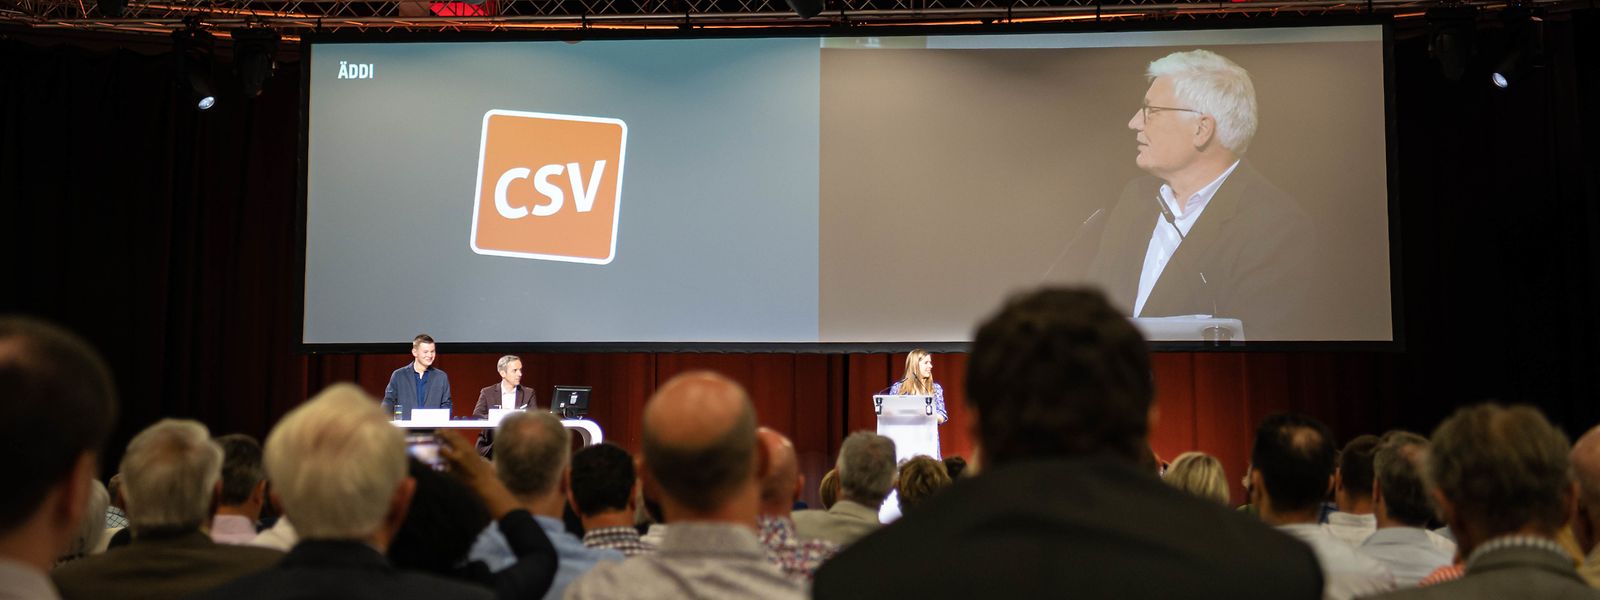 Lors du congrès du CSV ce samedi, le parti a présenté son nouveau logo.